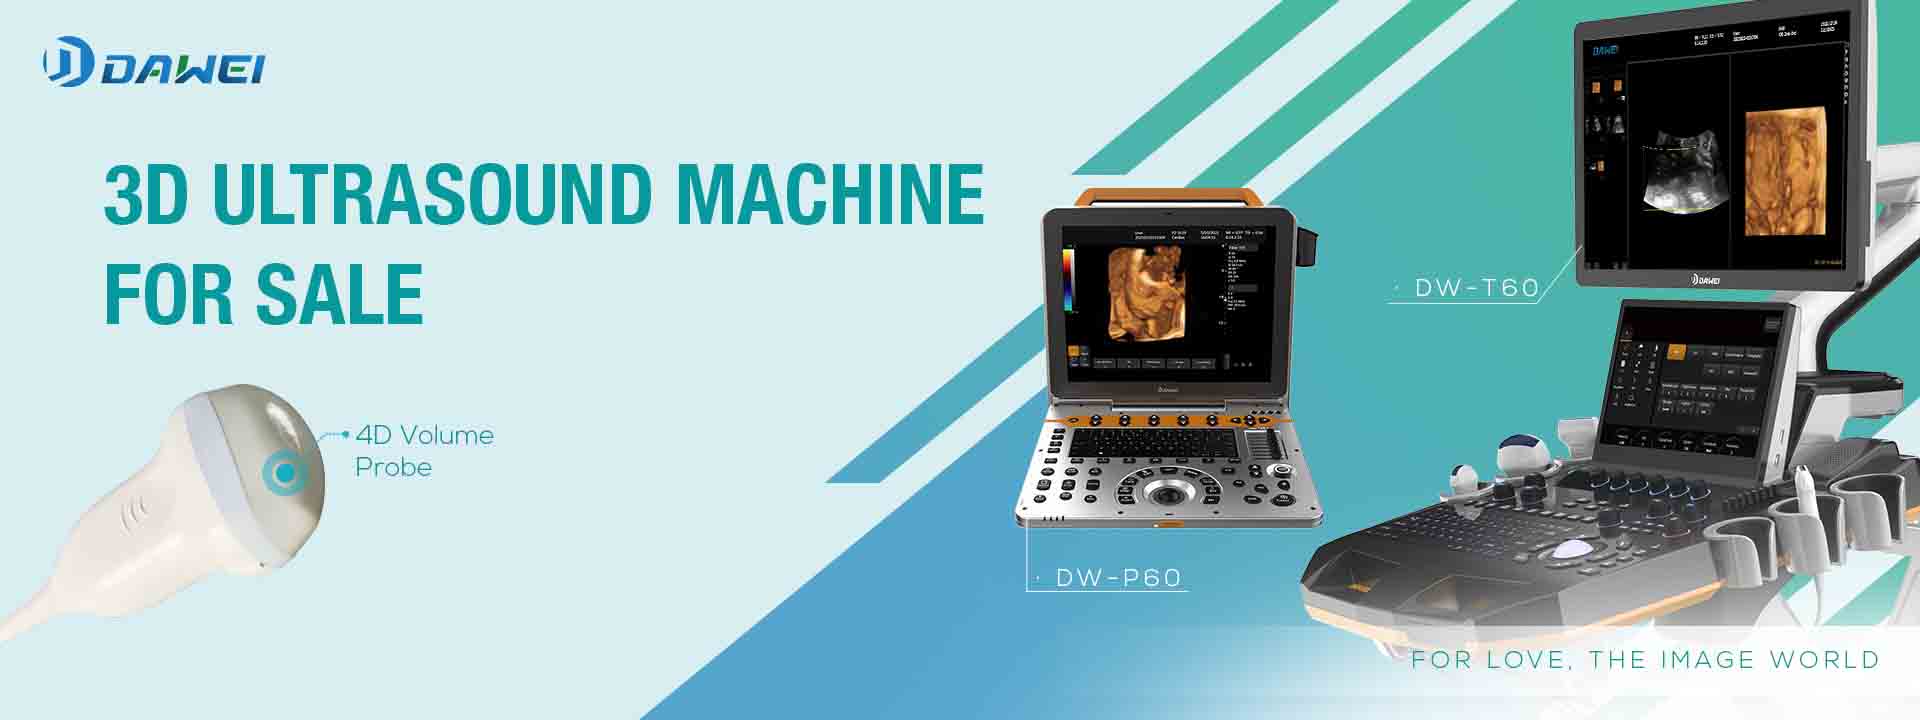 Давеи Медицал 3Д ултразвучни апарат на продају